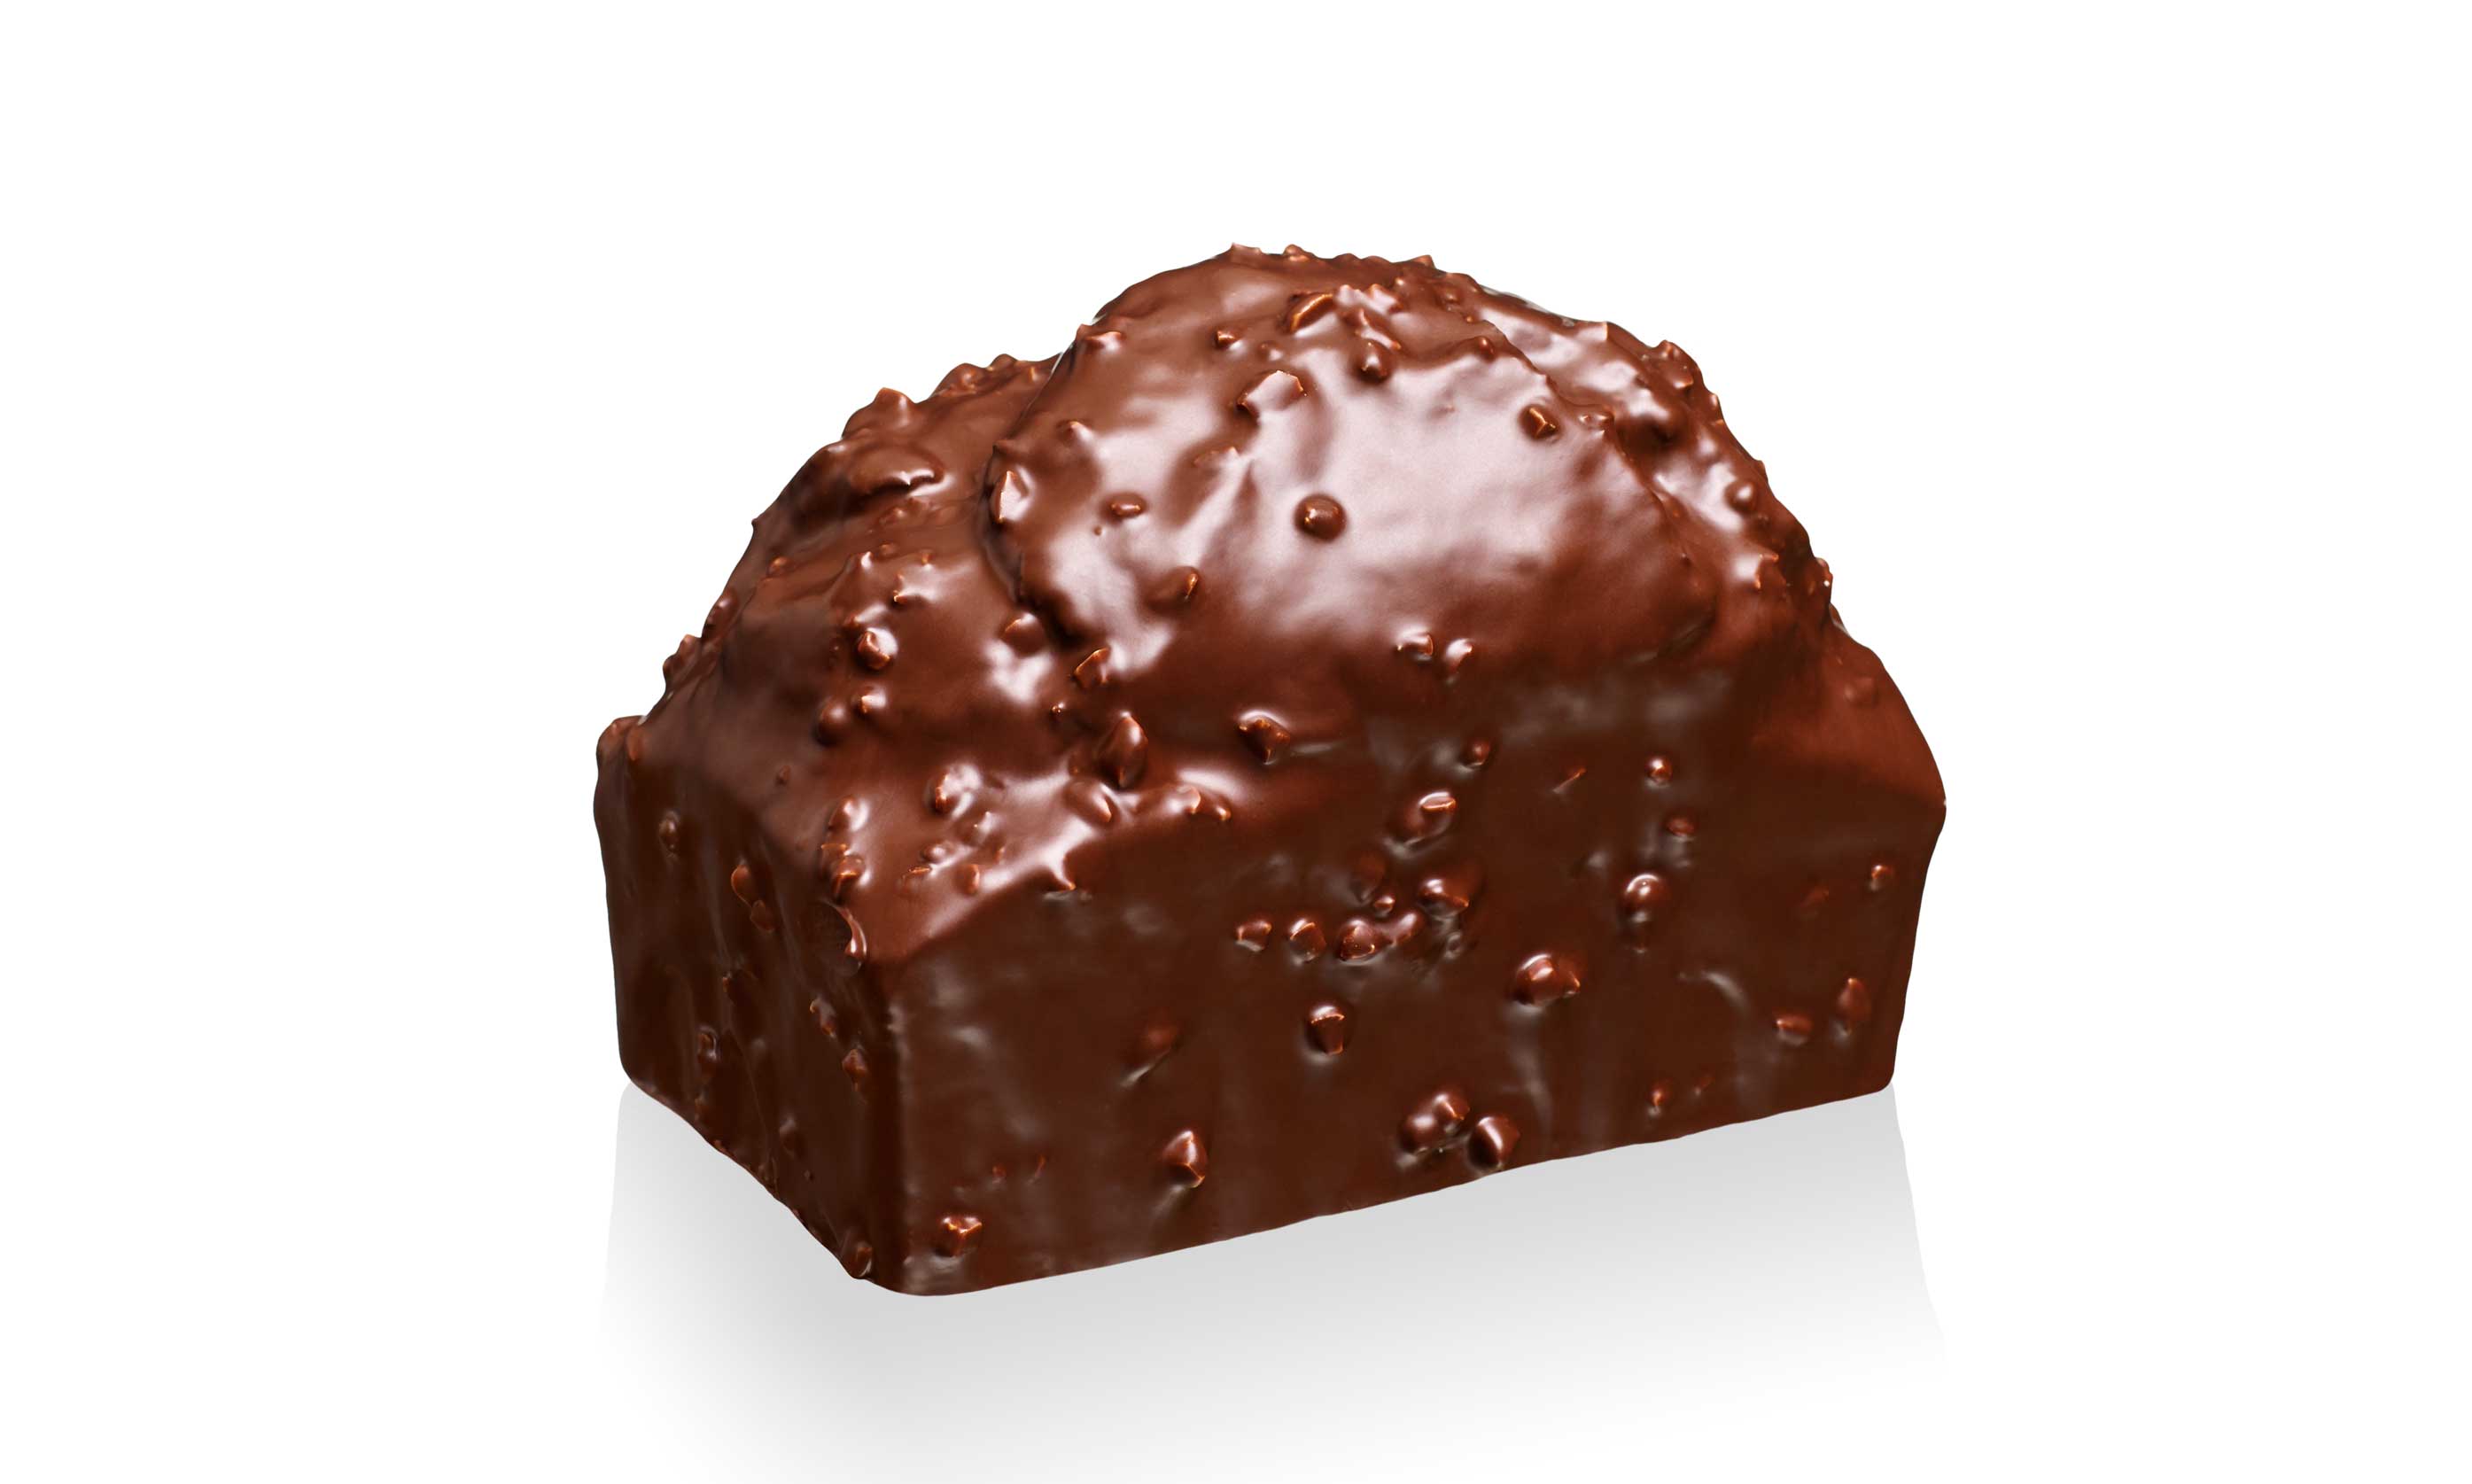 Pierre-Herme-Cake-Chocolate-and-Praline-Pound-Cake-1